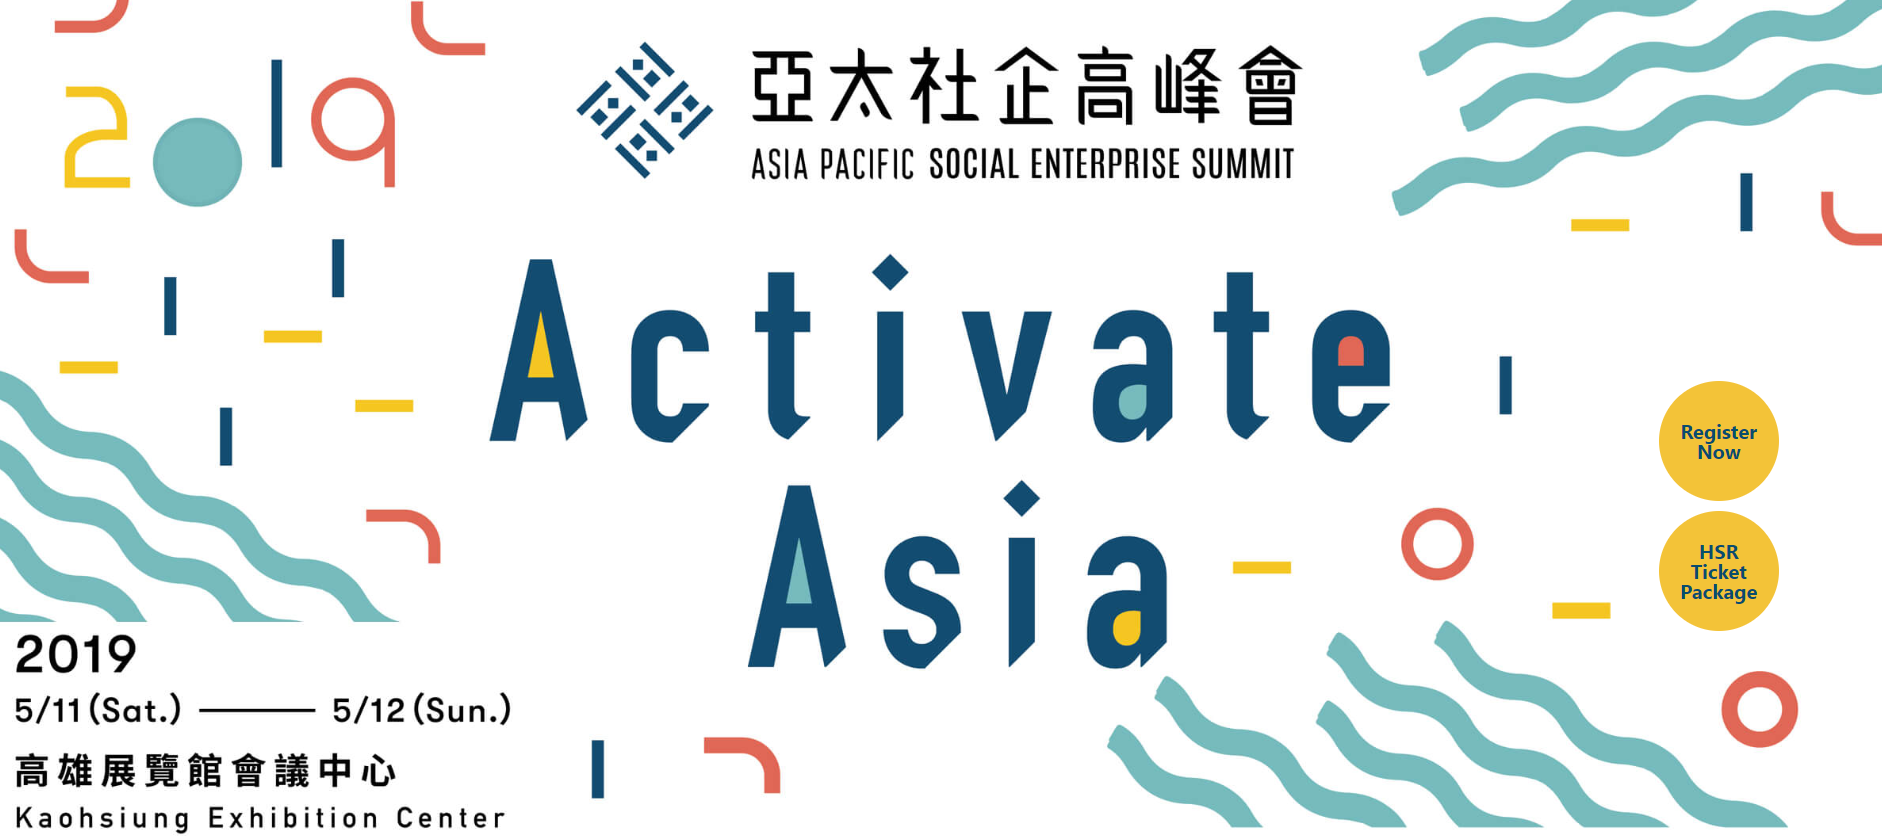 APSE Event - Asia Pacific Social Enterprise Summit